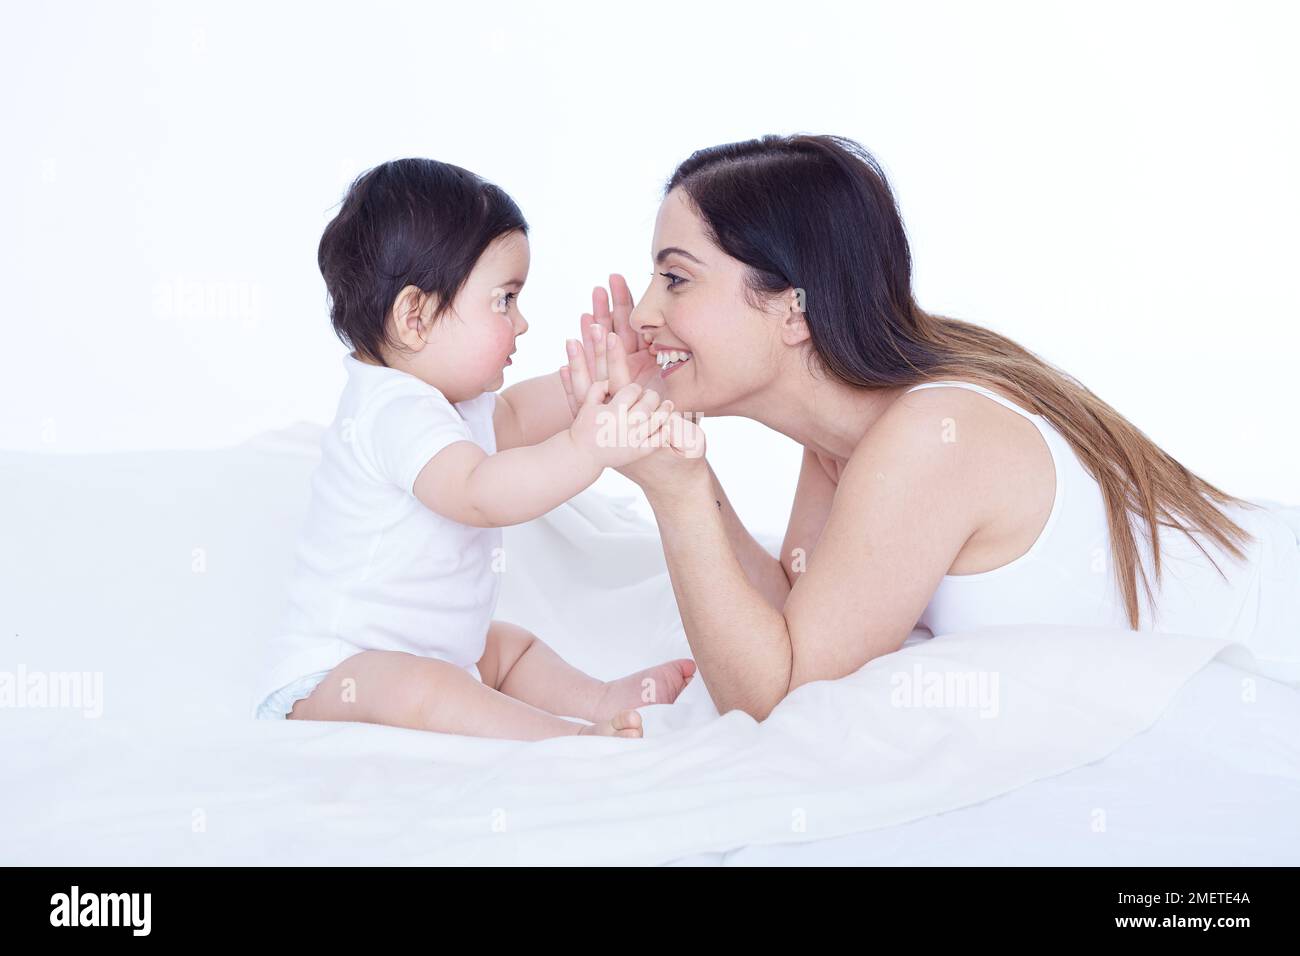 Fille de bébé (40 semaines) et mère face à face, souriante, fille de bébé tient les mains de la mère Banque D'Images